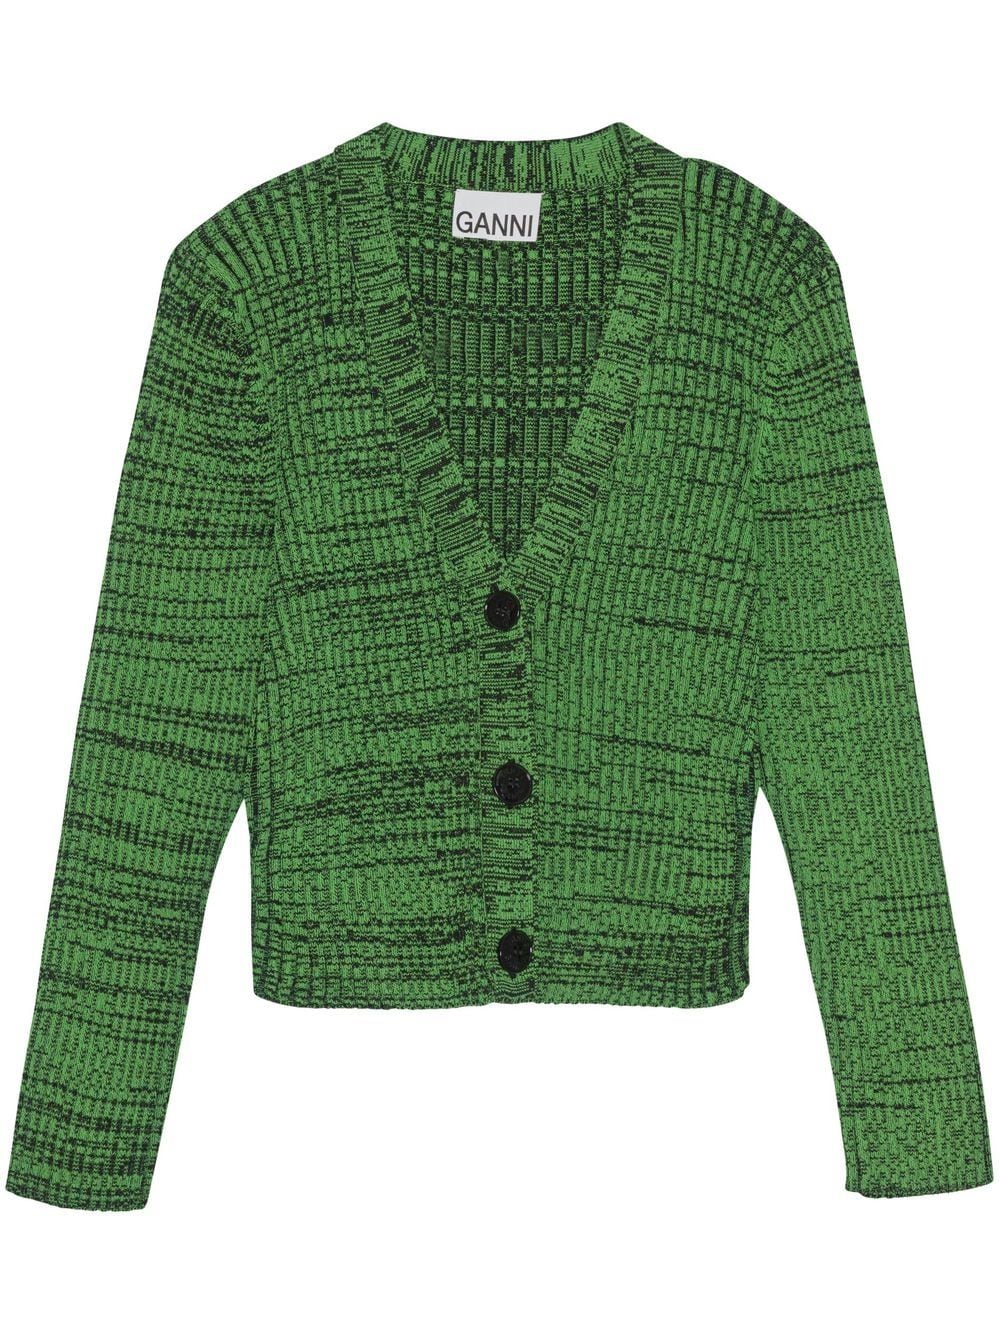 GANNI cropped melange knit cardigan - Green von GANNI